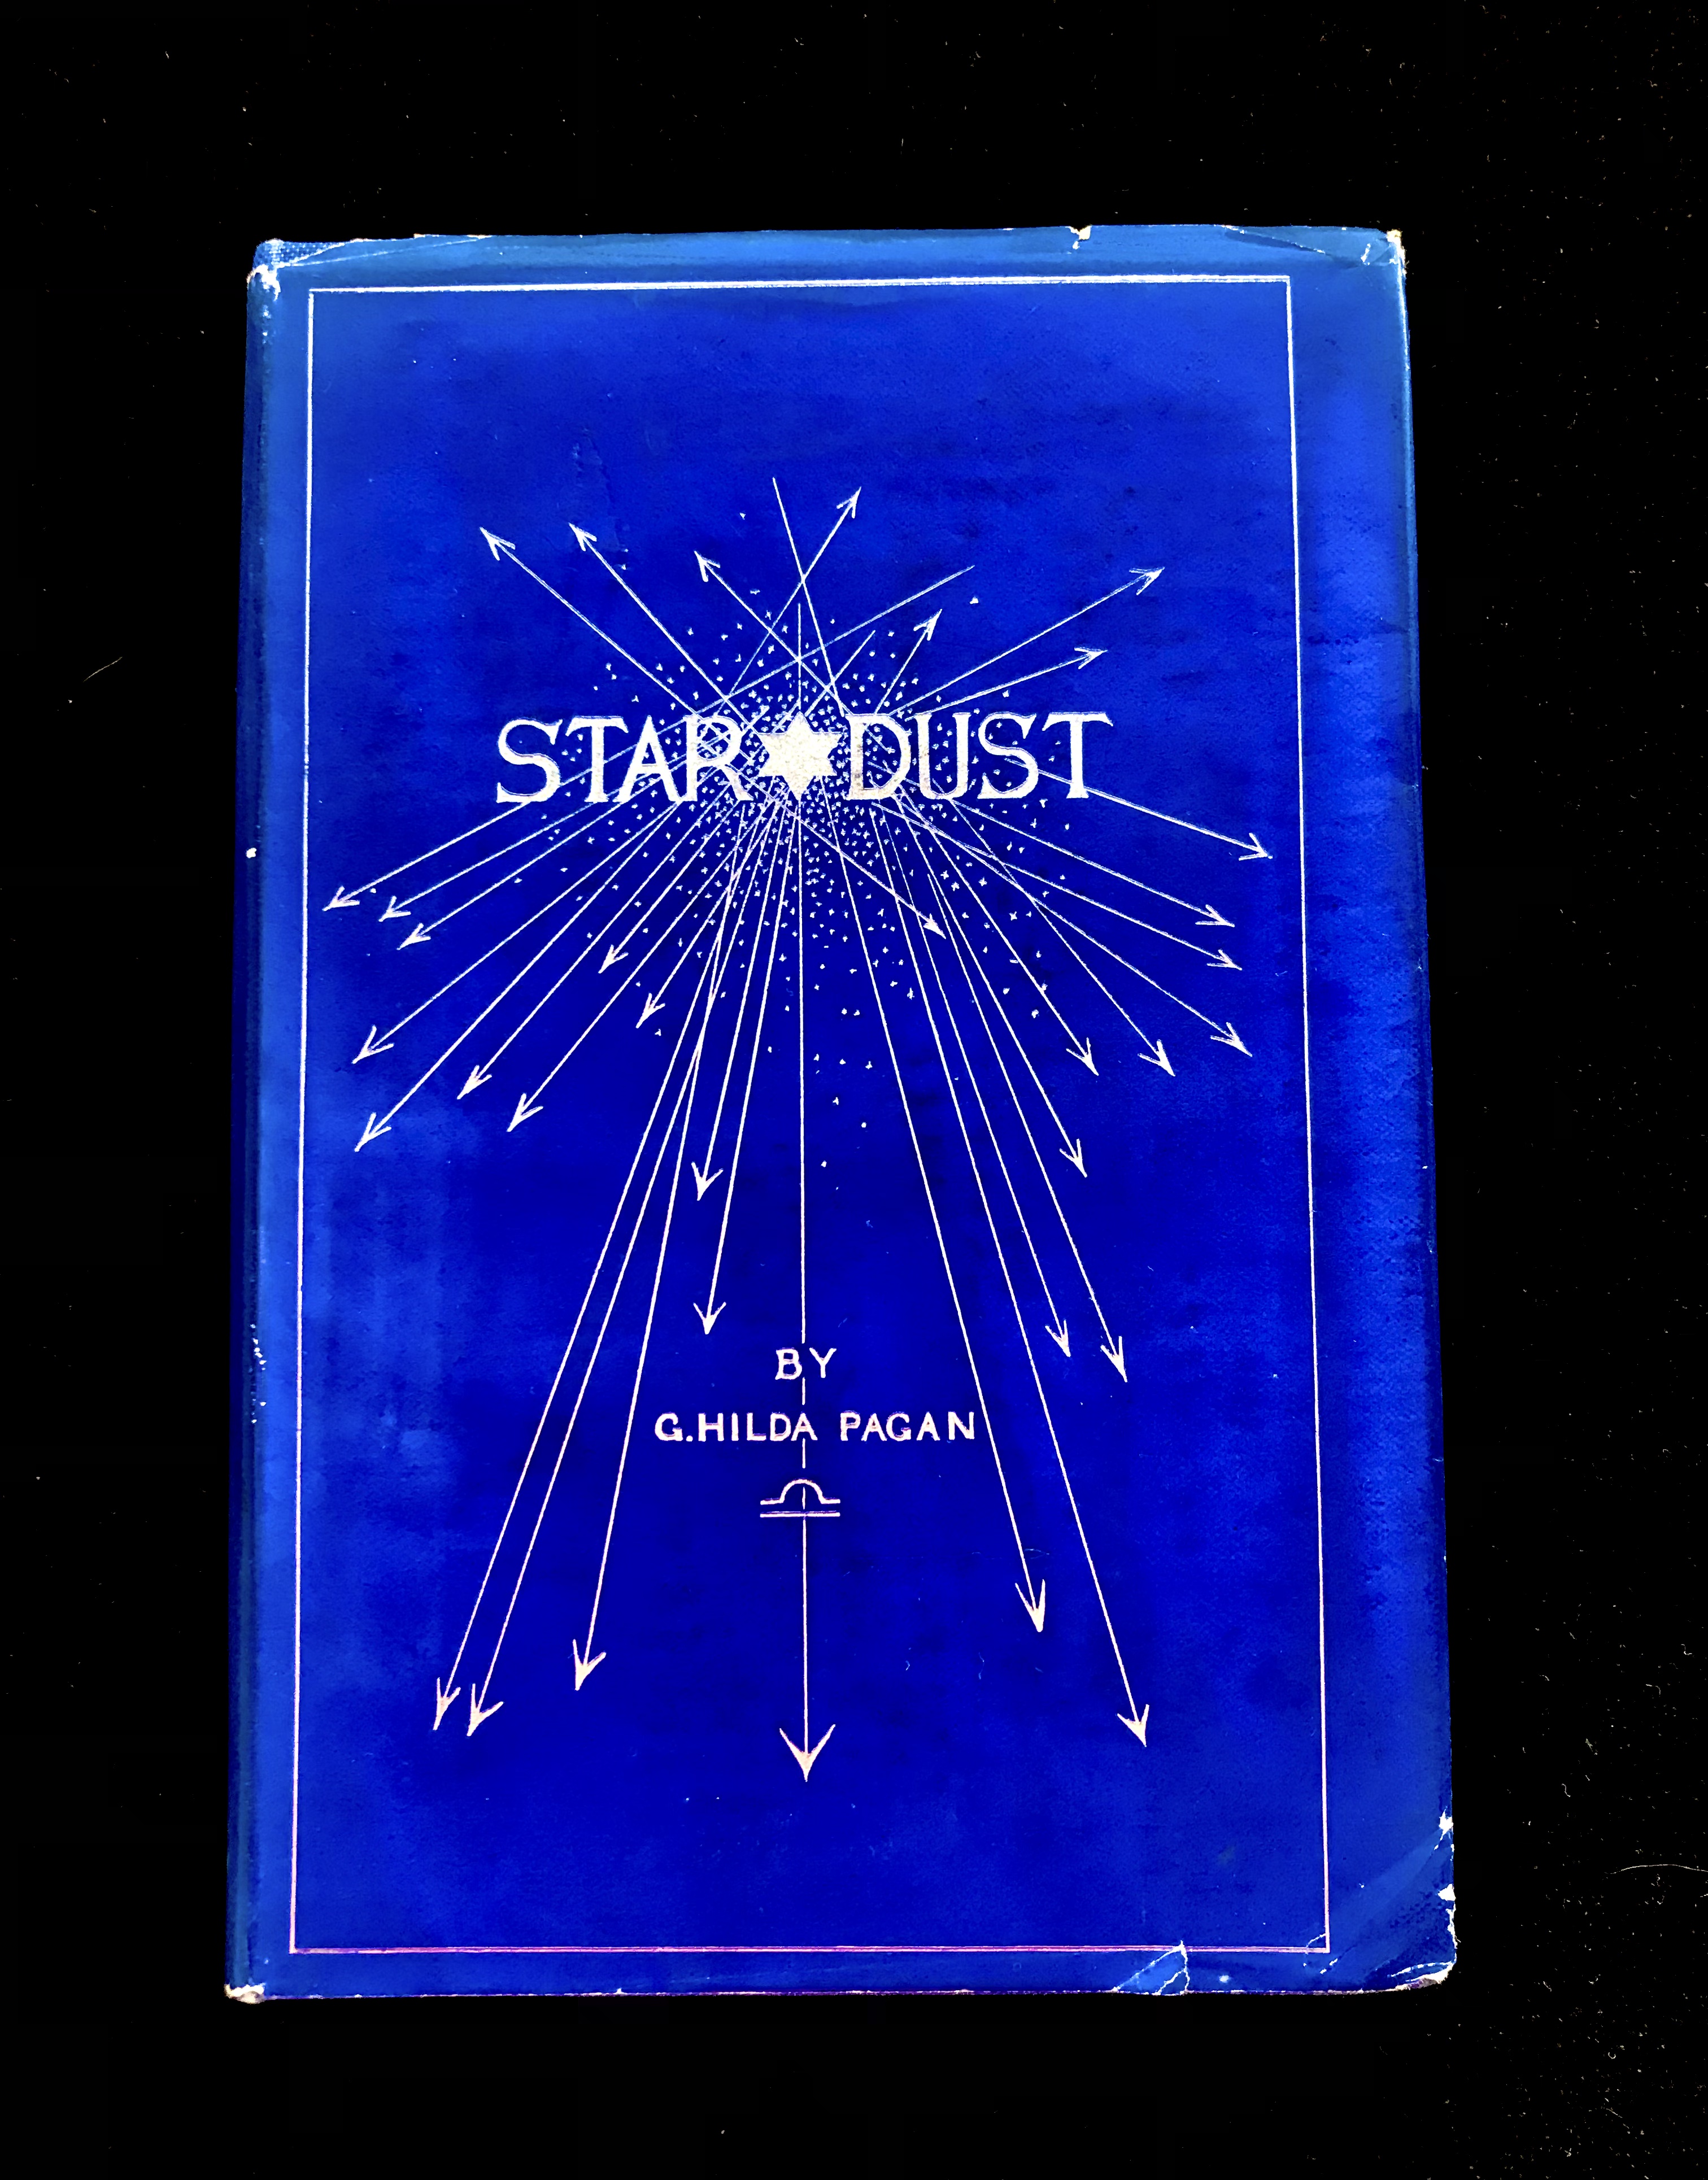 Star Dust by C. Hilda Pagan